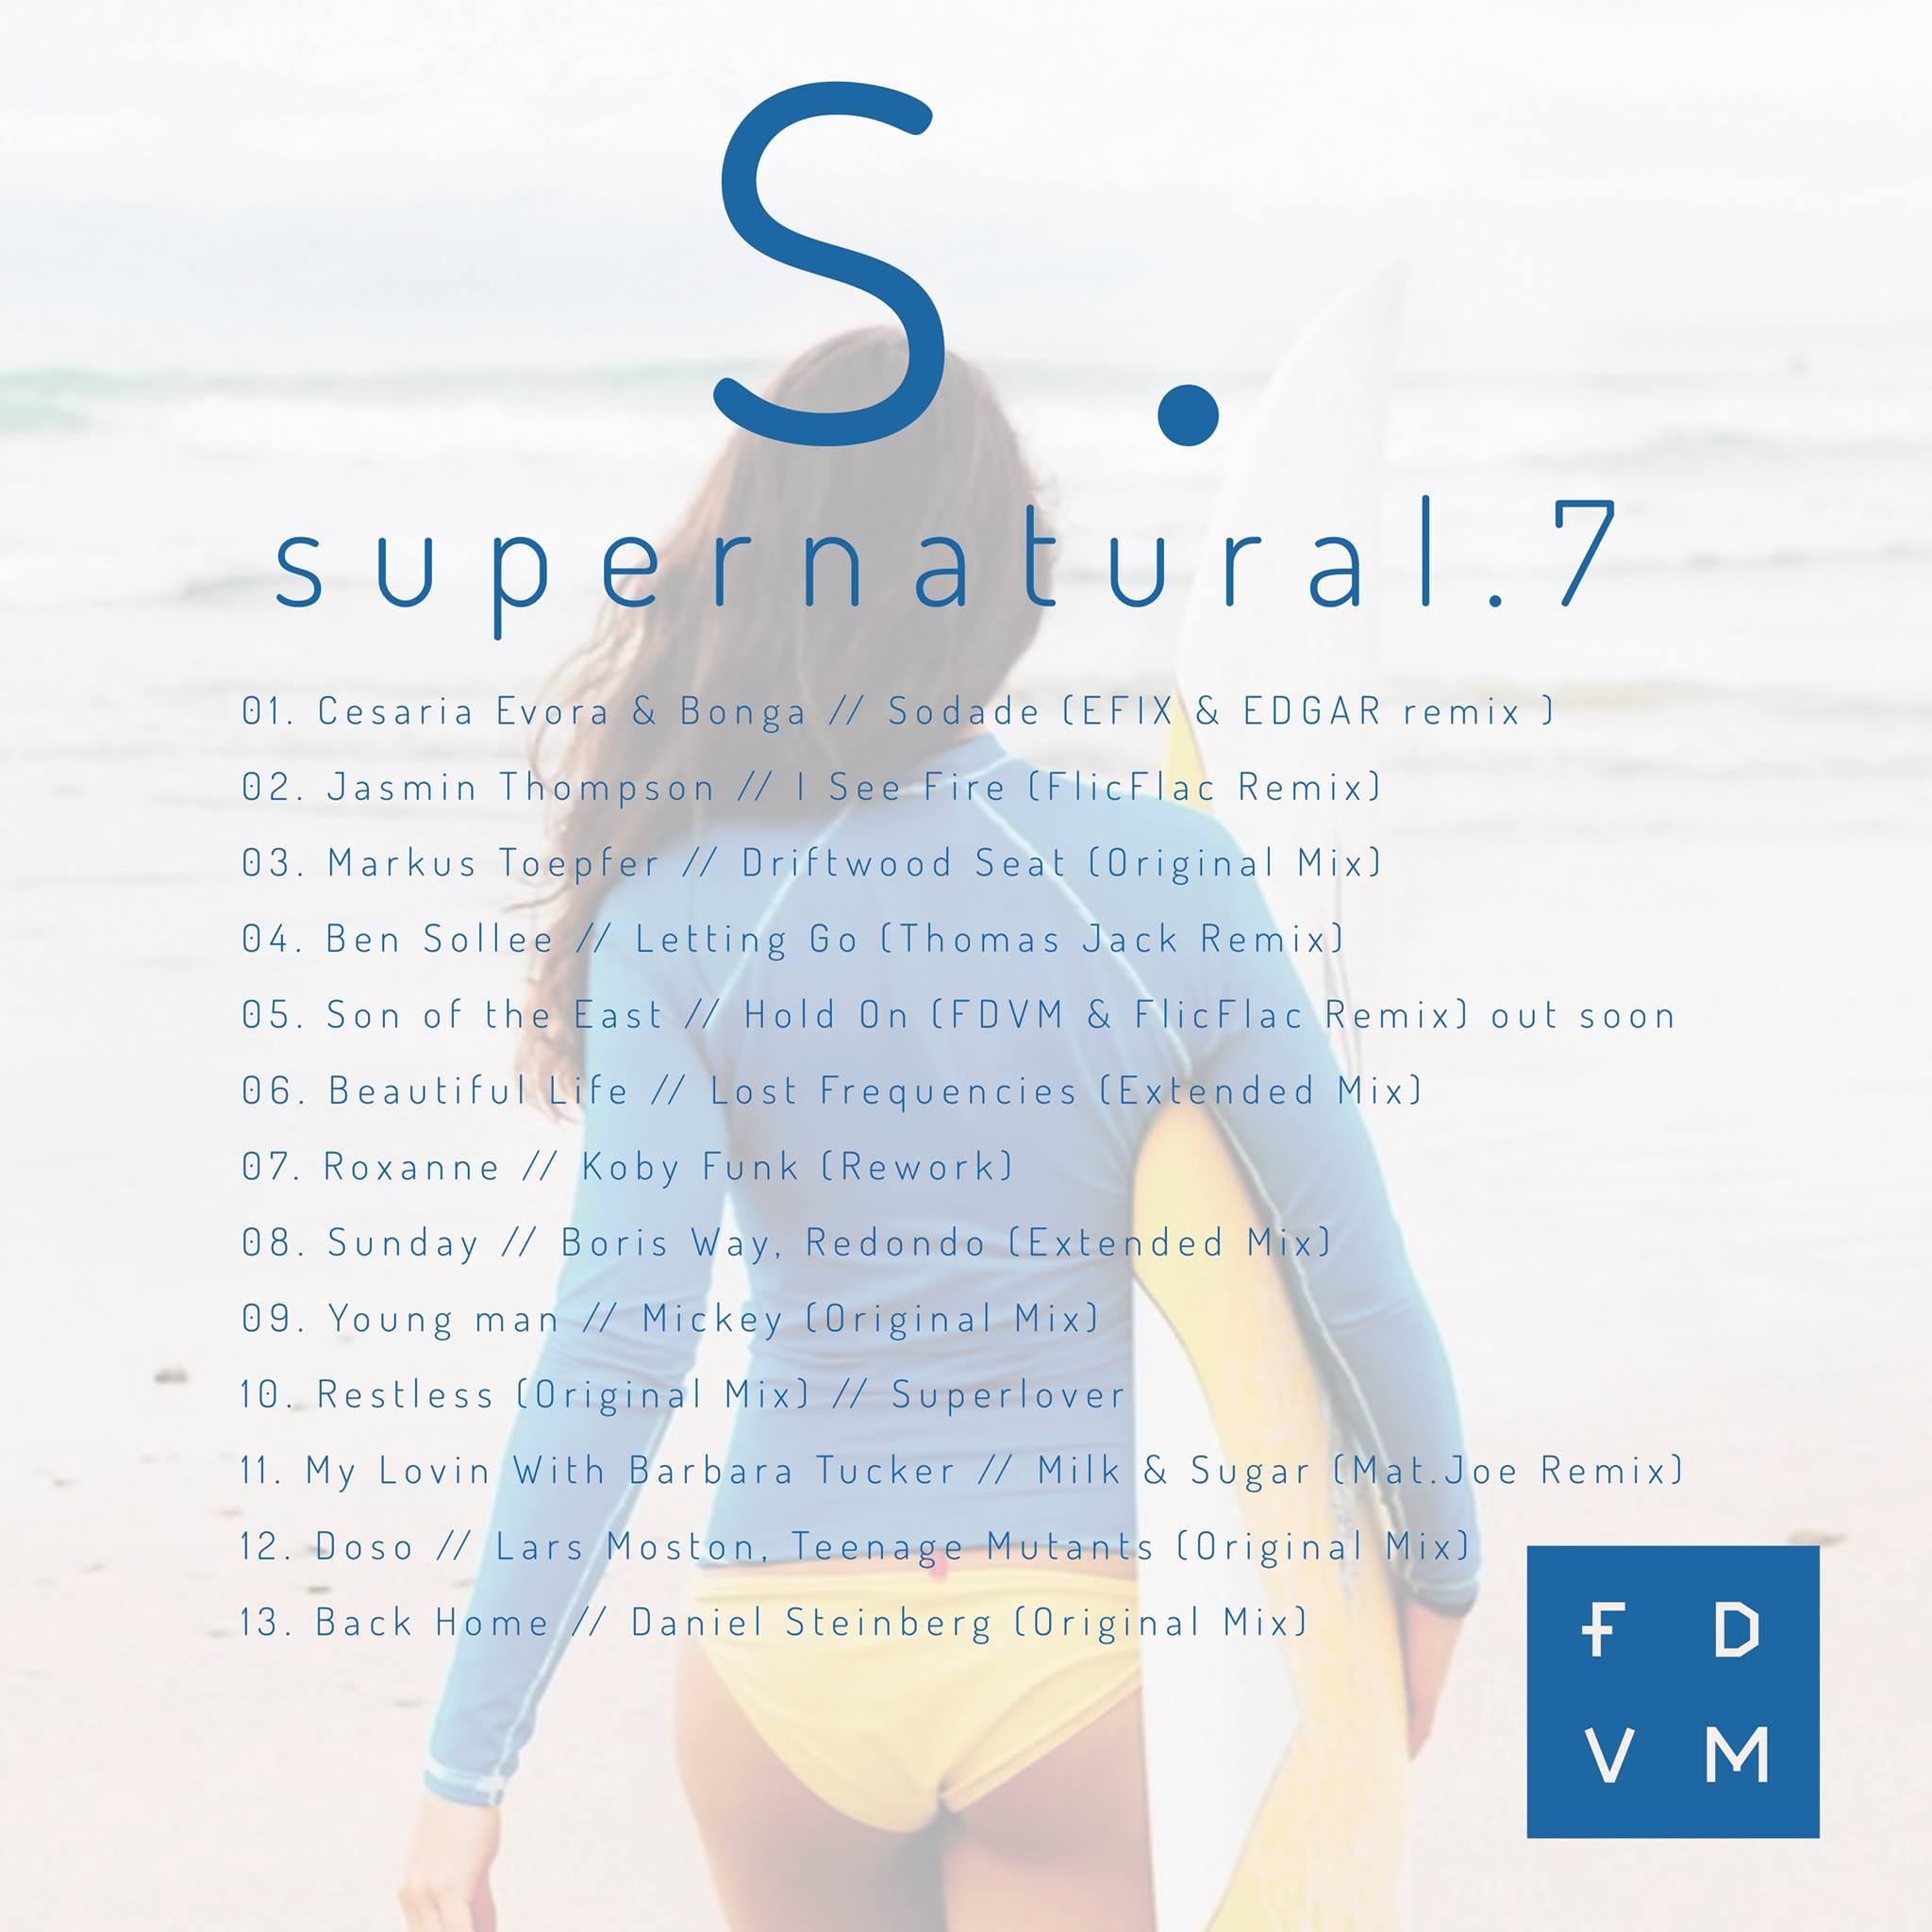 FDVM supernatural 7 tracklist